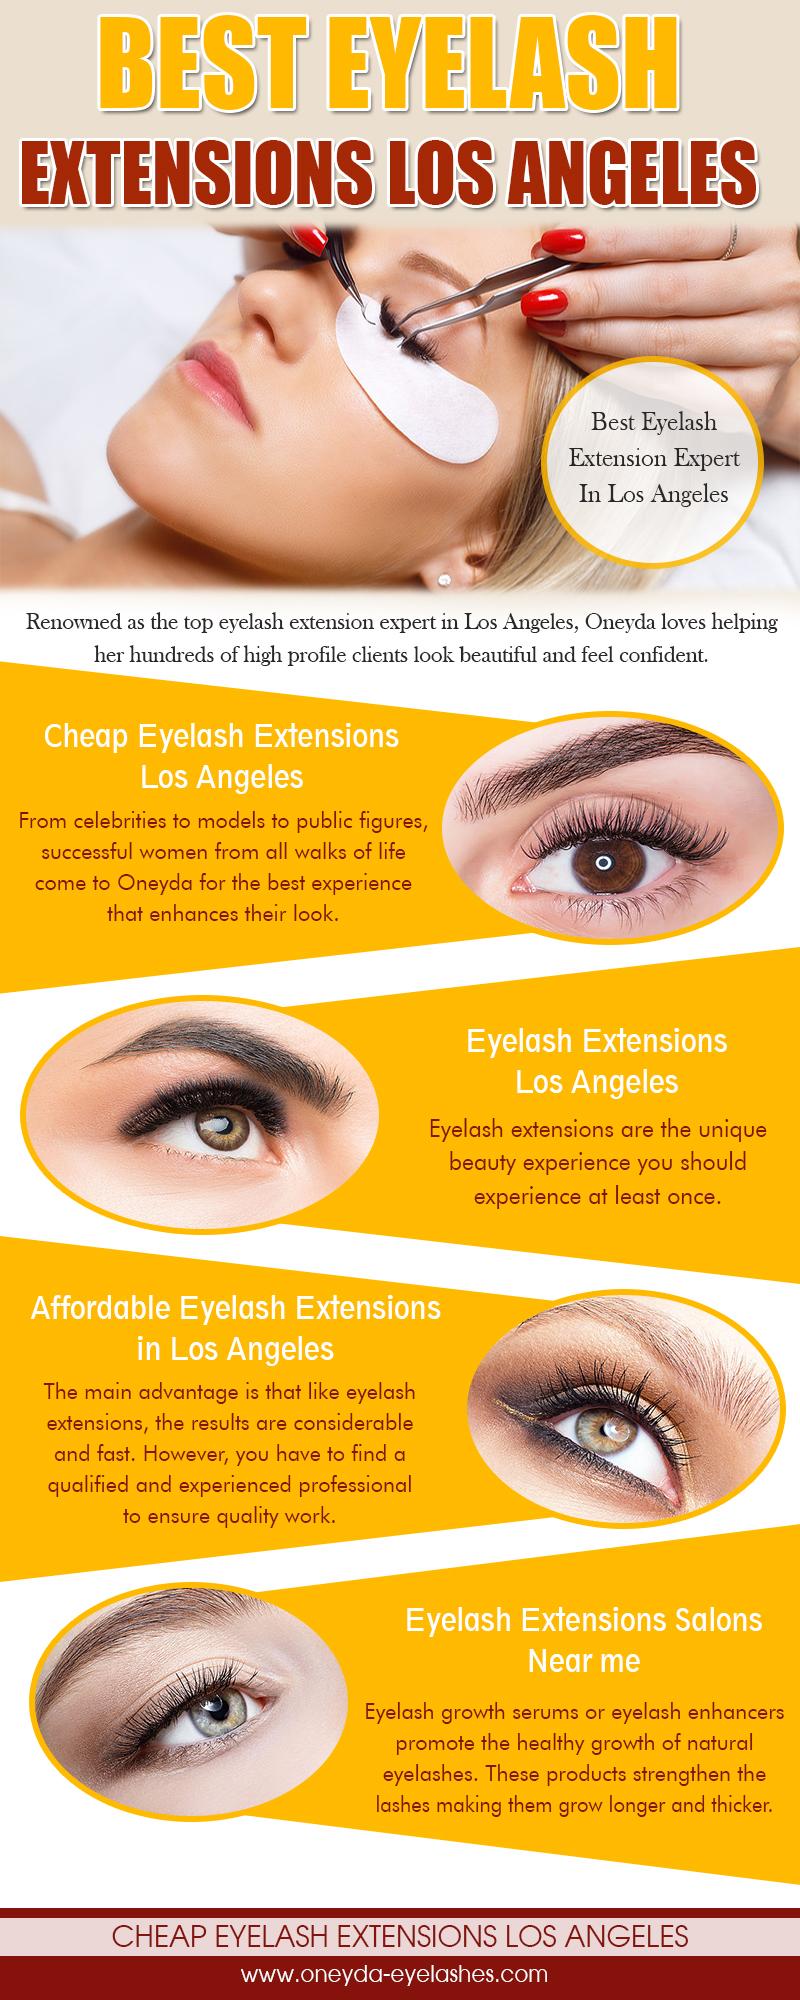 Best Eyelash Extensions Los Angeles